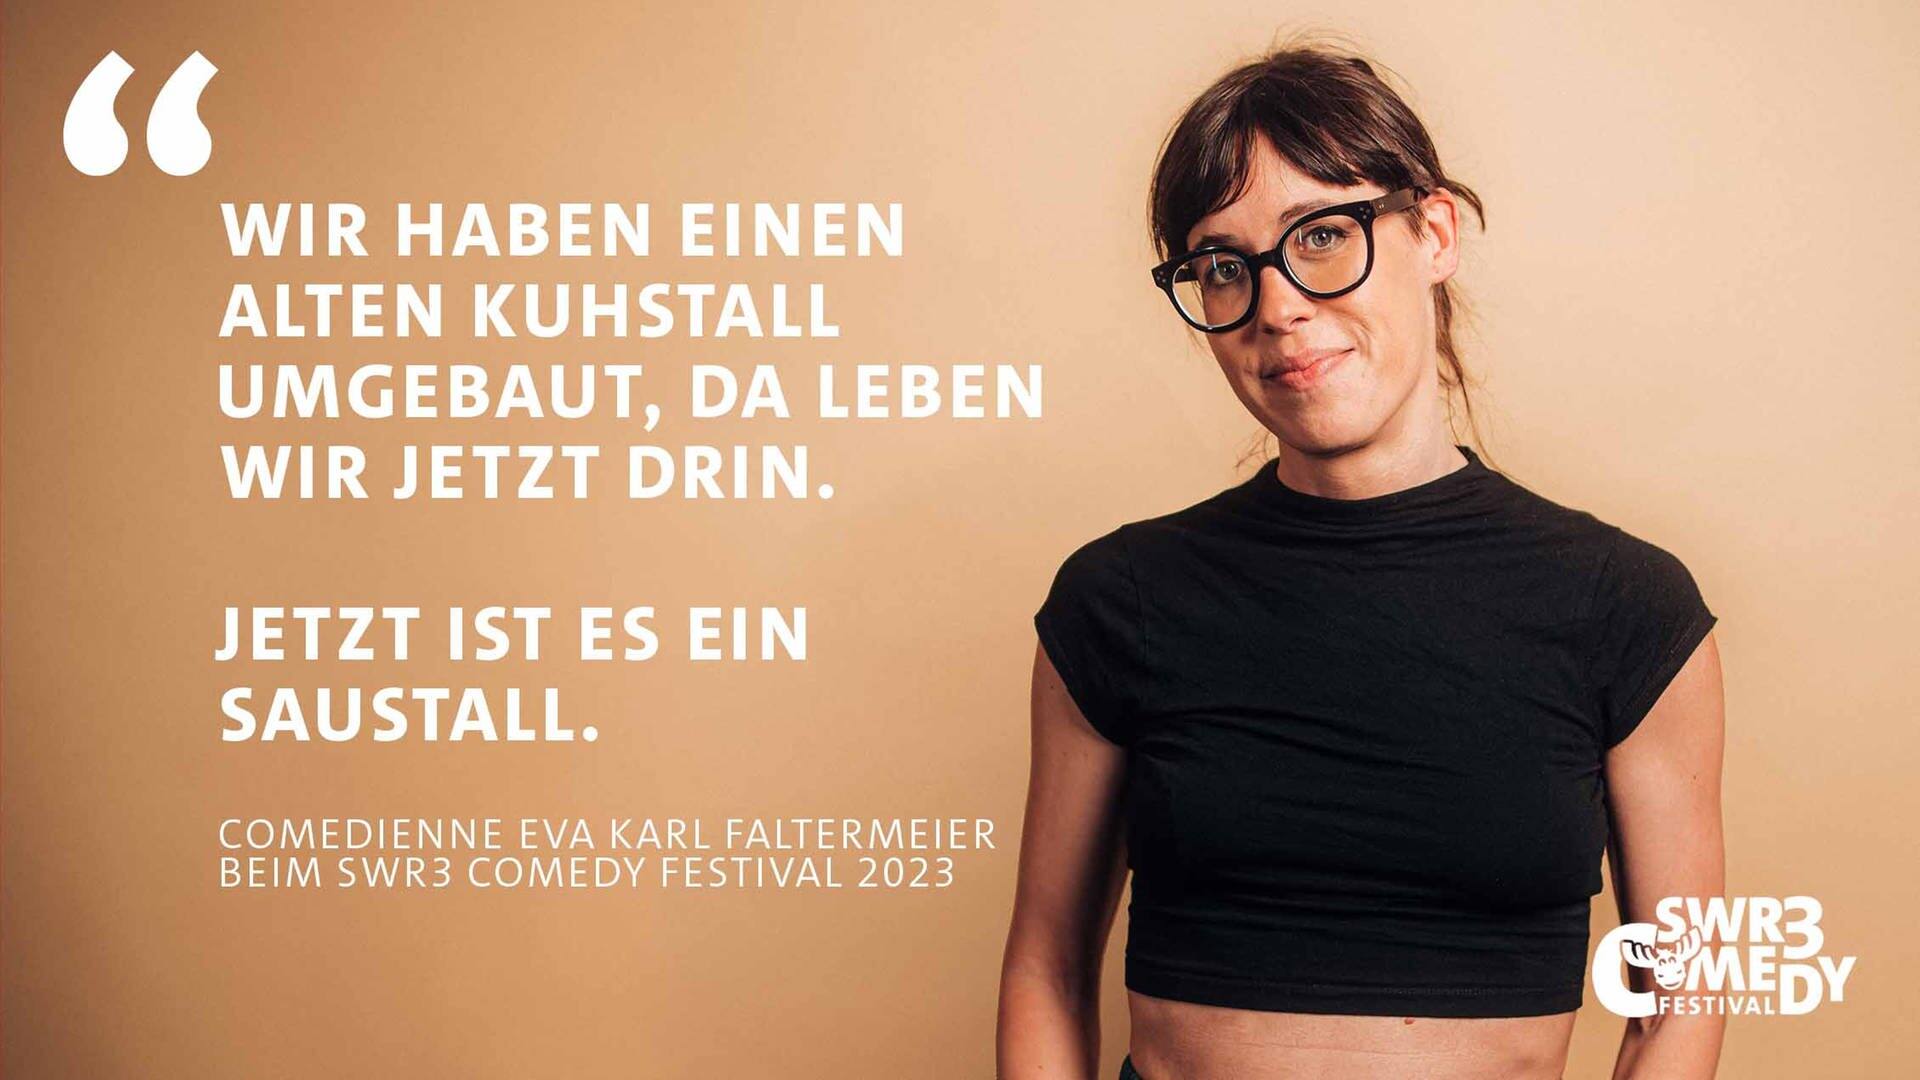 Auf hellbraunem Hintergrund ist ein Zitat von Eva Karl Faltermeier beim SWR3 Comedy Festival zu lesen: "Wir haben einen alten Kuhstall umgebaut, da wohnen wir jetzt drin. Jetzt ist es ein Saustall."  Die Comiedienne ist rechts auf dem Bild zu sehen. (Foto: SWR3, Lea Kerpacs)